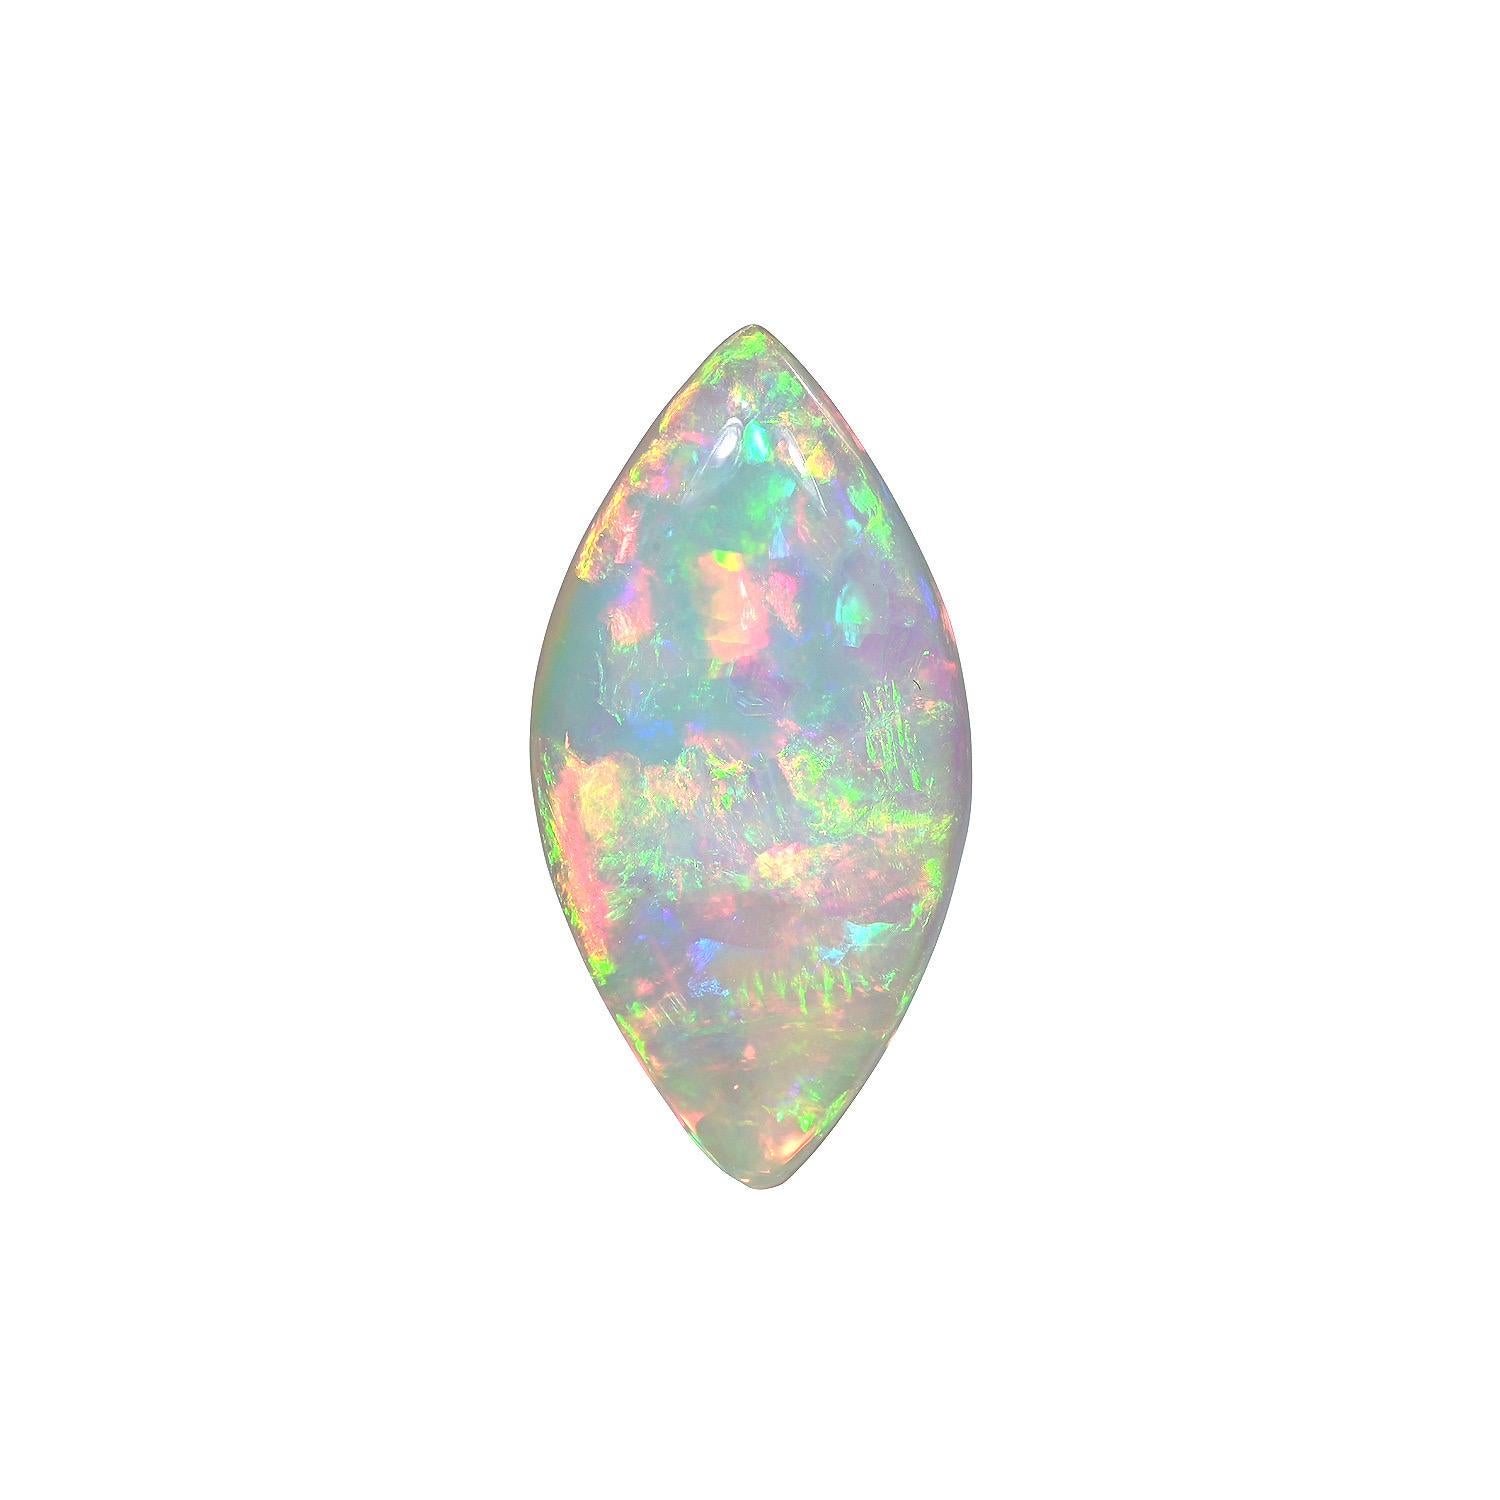 Natürliche 13,88 Karat Marquise äthiopischen Opal lose Edelstein, angeboten unmontiert zu einem feinen Edelstein Liebhaber.
Rücksendungen werden von uns innerhalb von 7 Tagen nach Lieferung angenommen und bezahlt.
Auf Anfrage bieten wir Ihnen